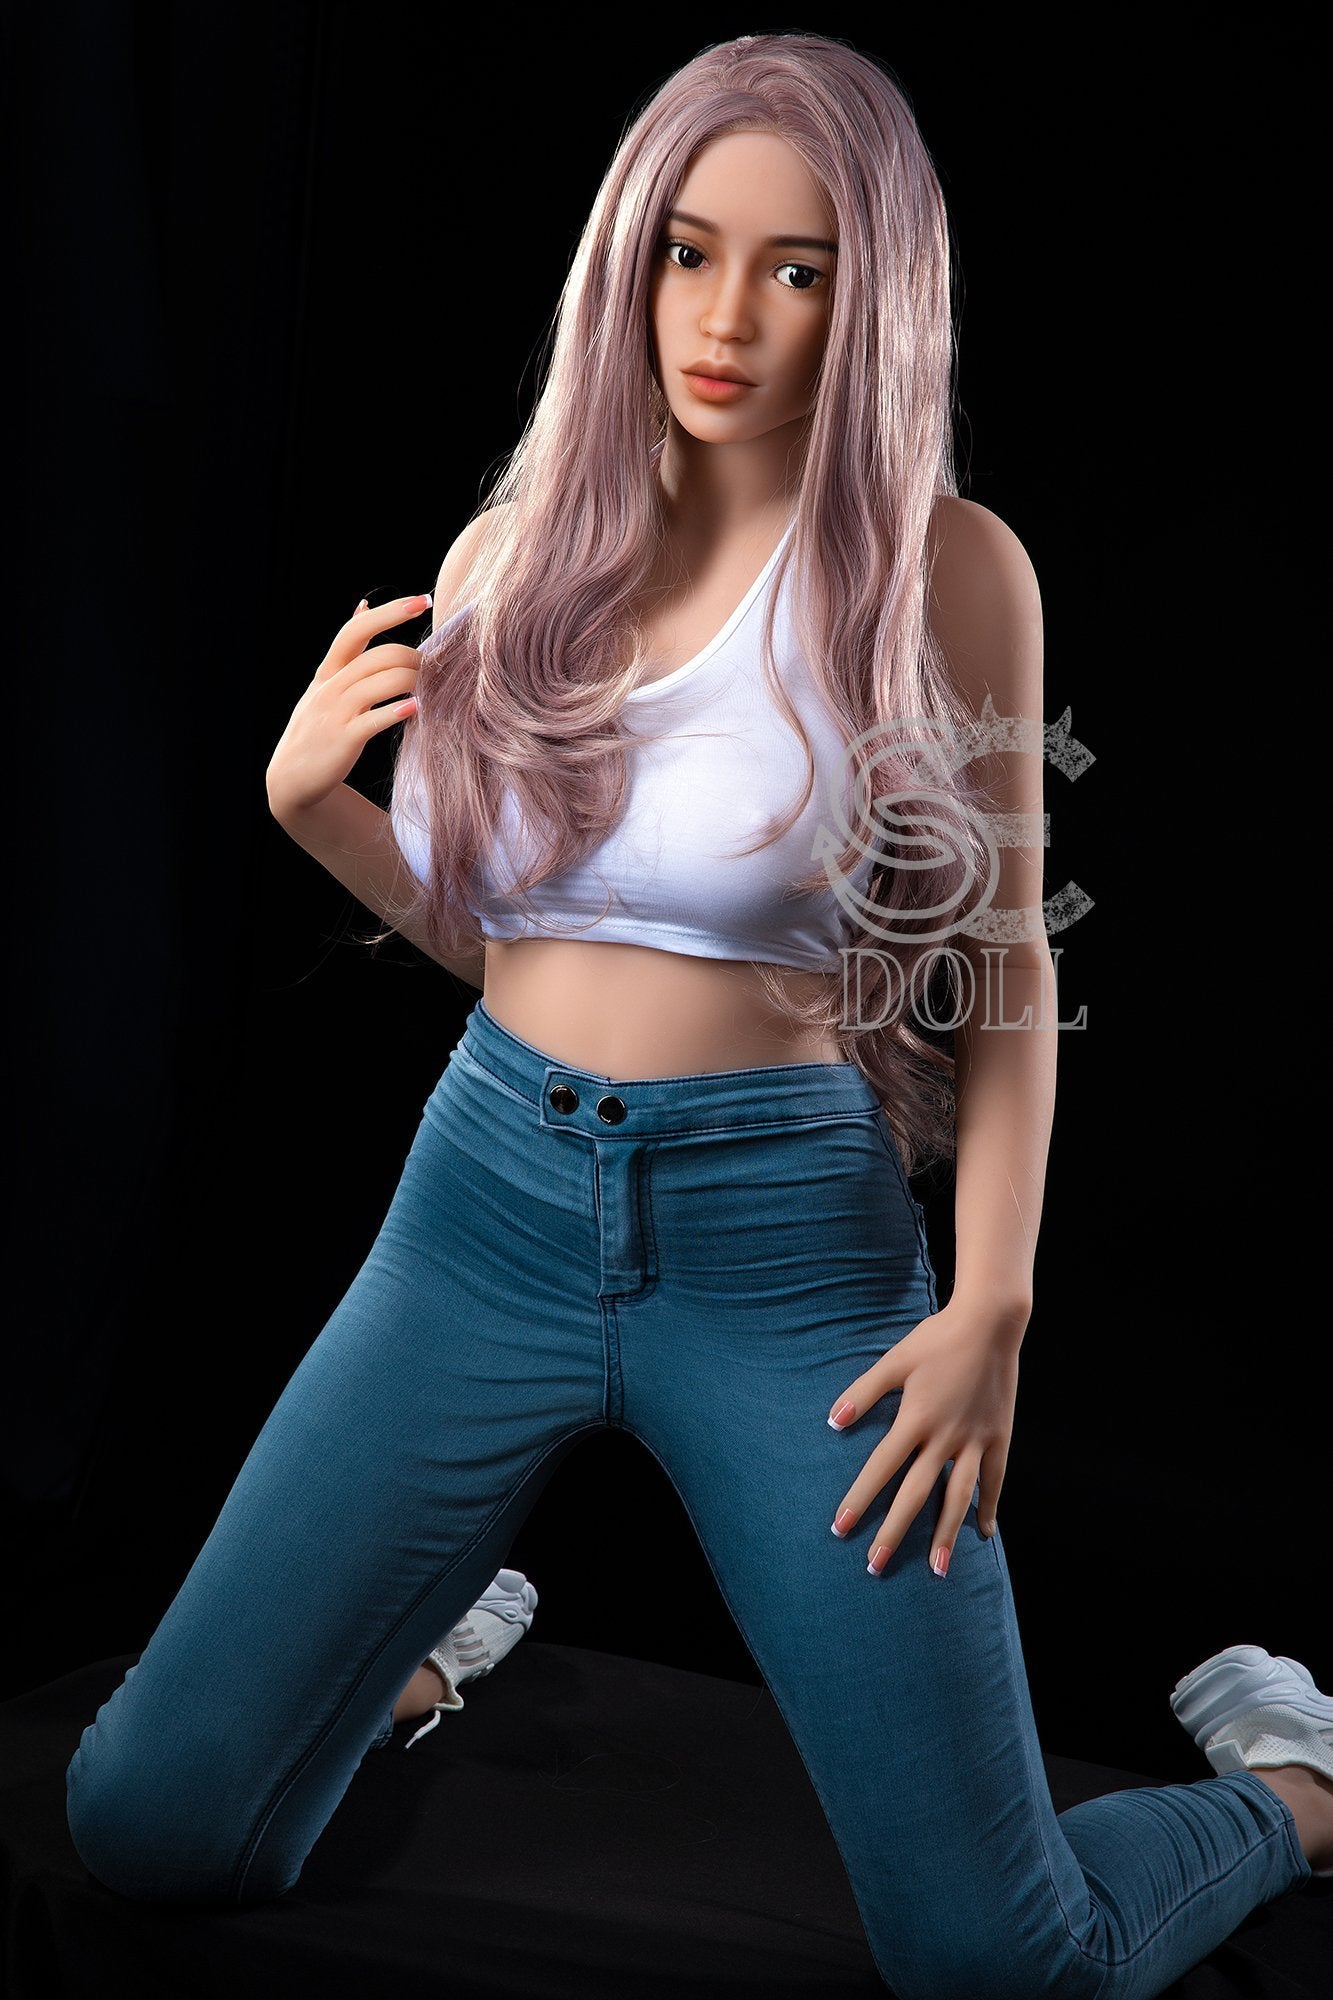 SE 161cm G Cup Big Breast Pink Long Hair Fashion Cool Sexy Doll-Beth - lovedollshops.com